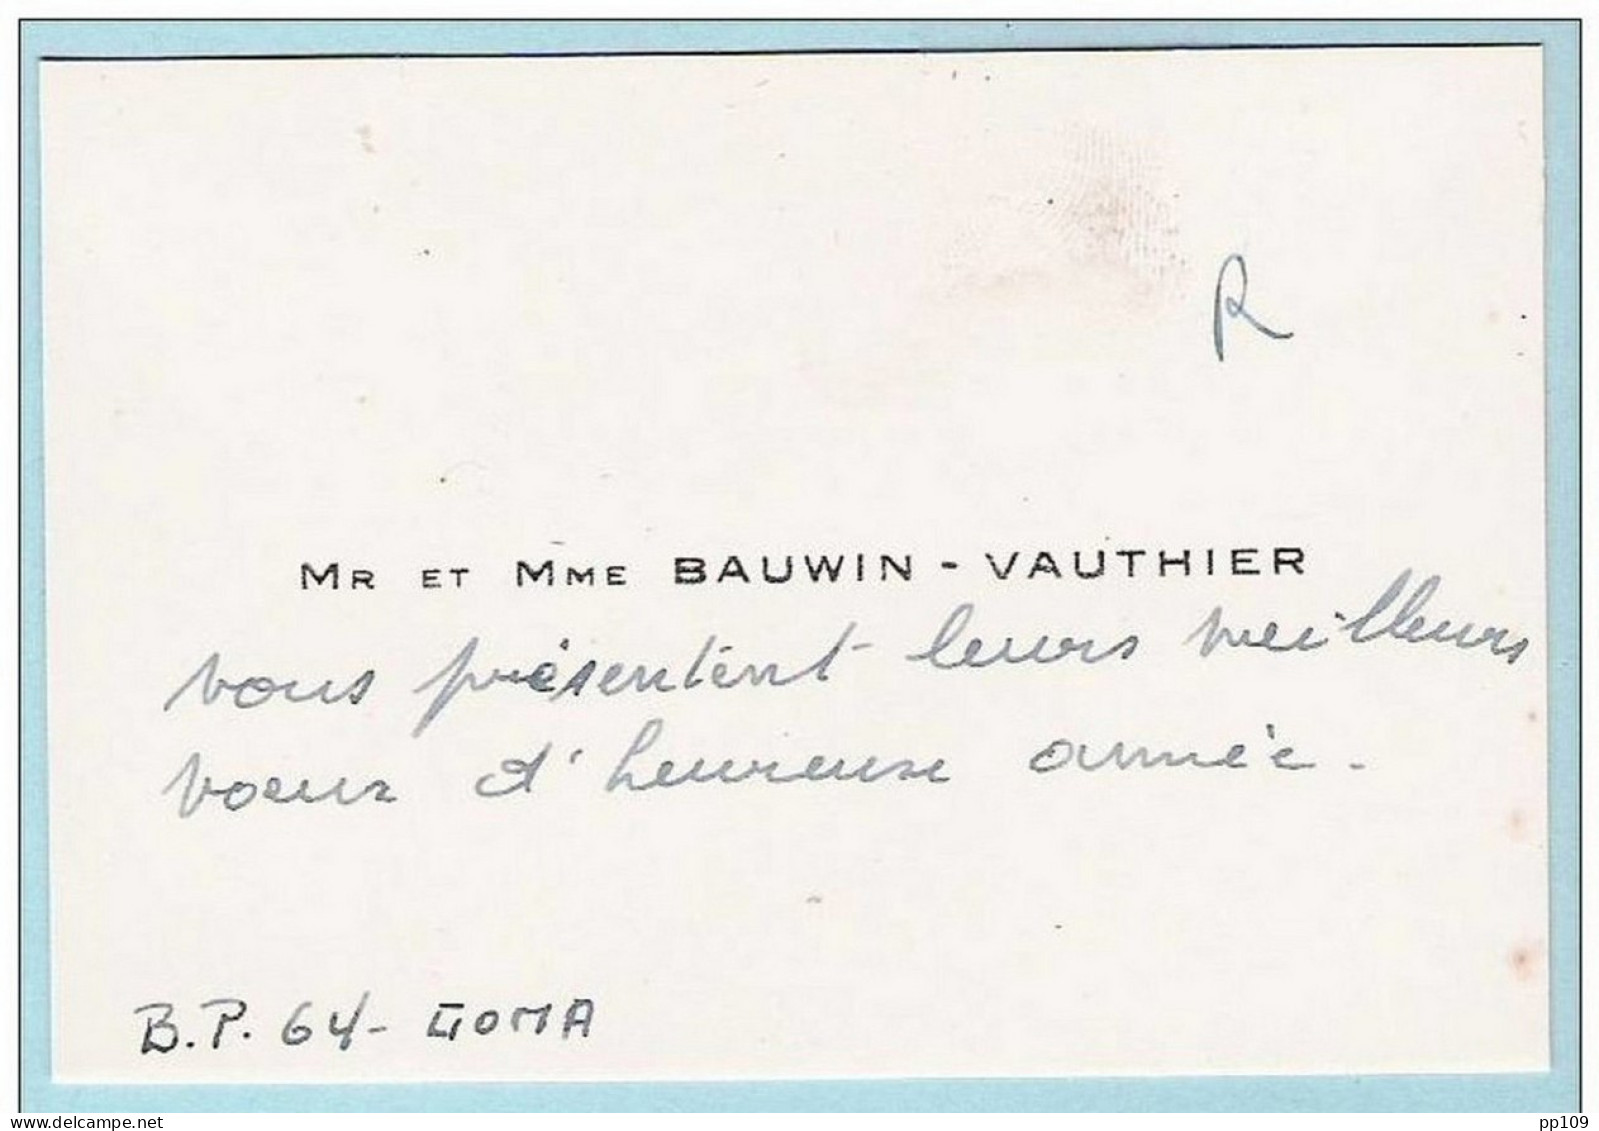 Carte De Visite Ancienne :  Mr Et Mme BAUWIN - VAUTHIER  - Boîte Postale 64 à GOMA  - Congo Belge - Cartes De Visite